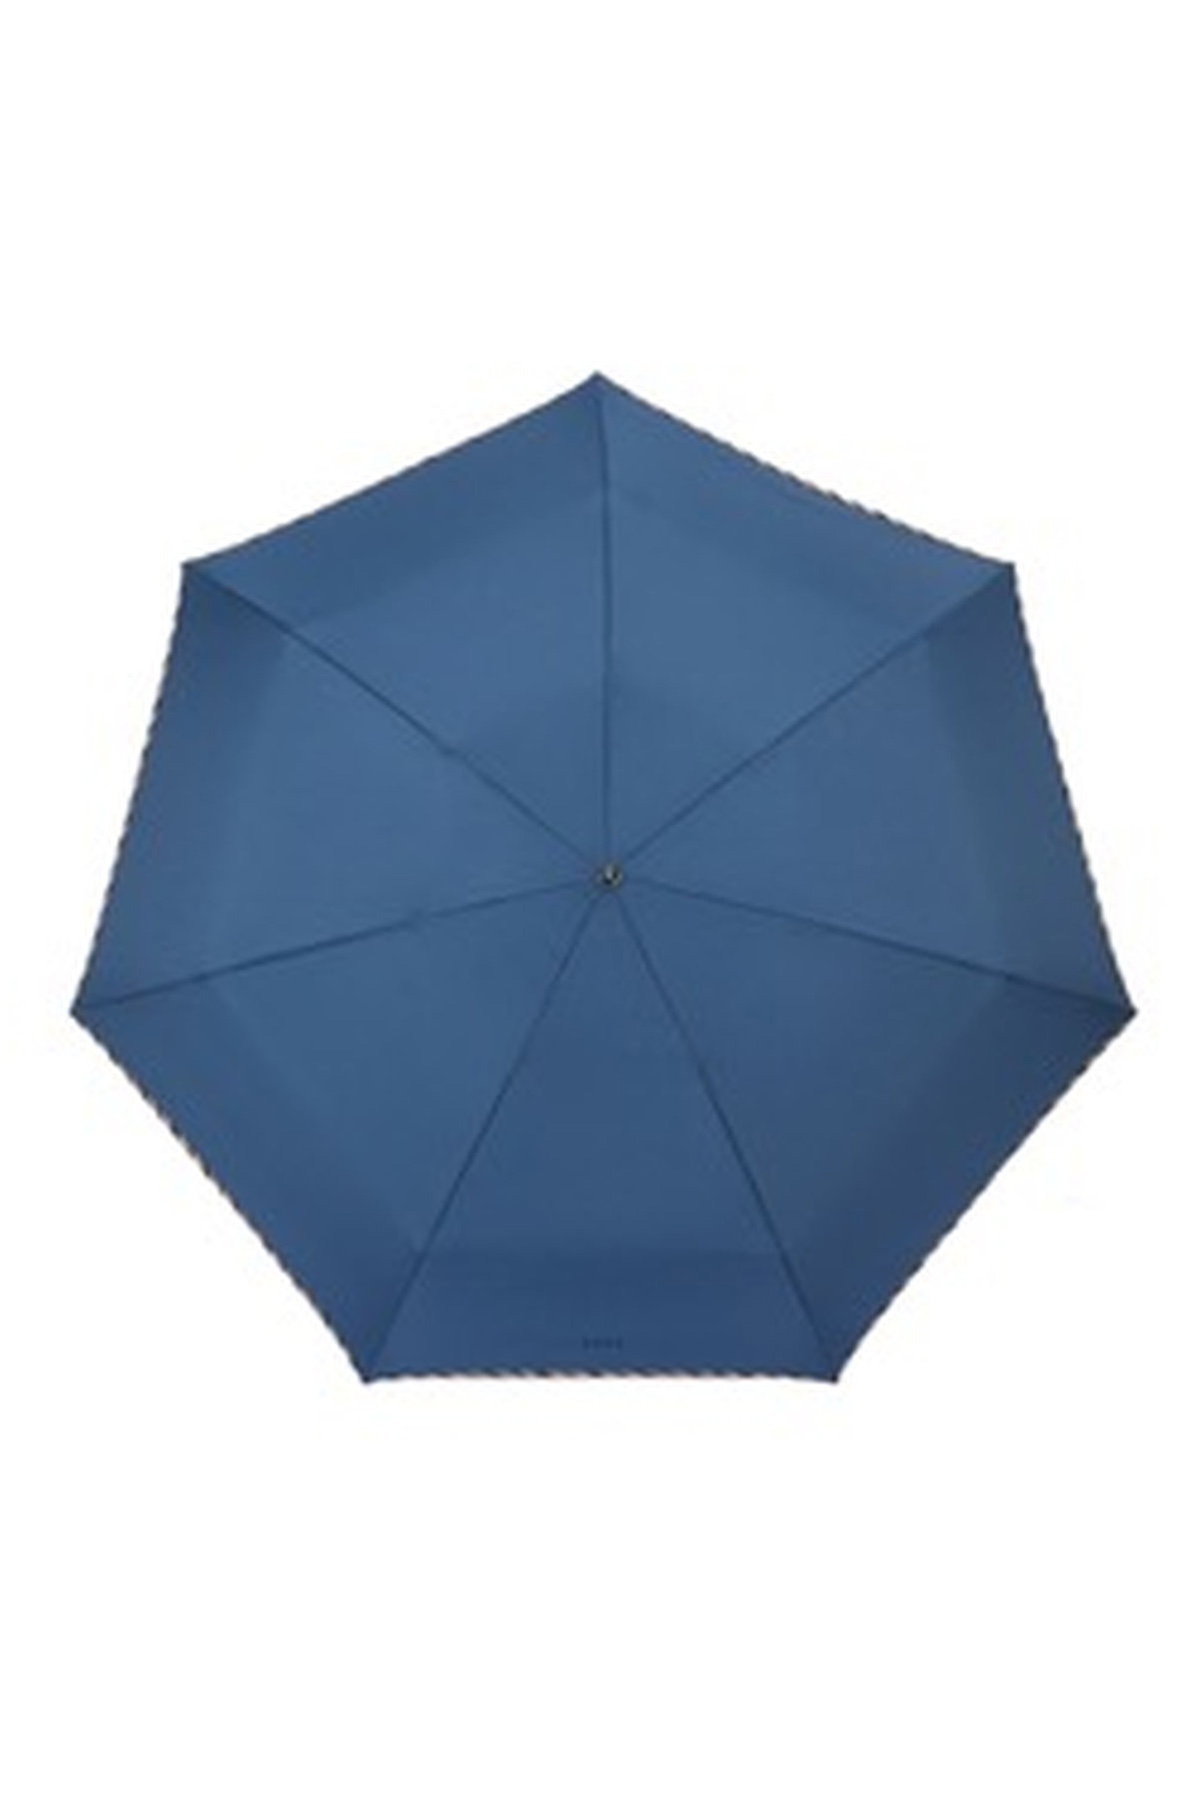 【紳士雨傘】折りたたみ傘無地パイピング 詳細画像 6